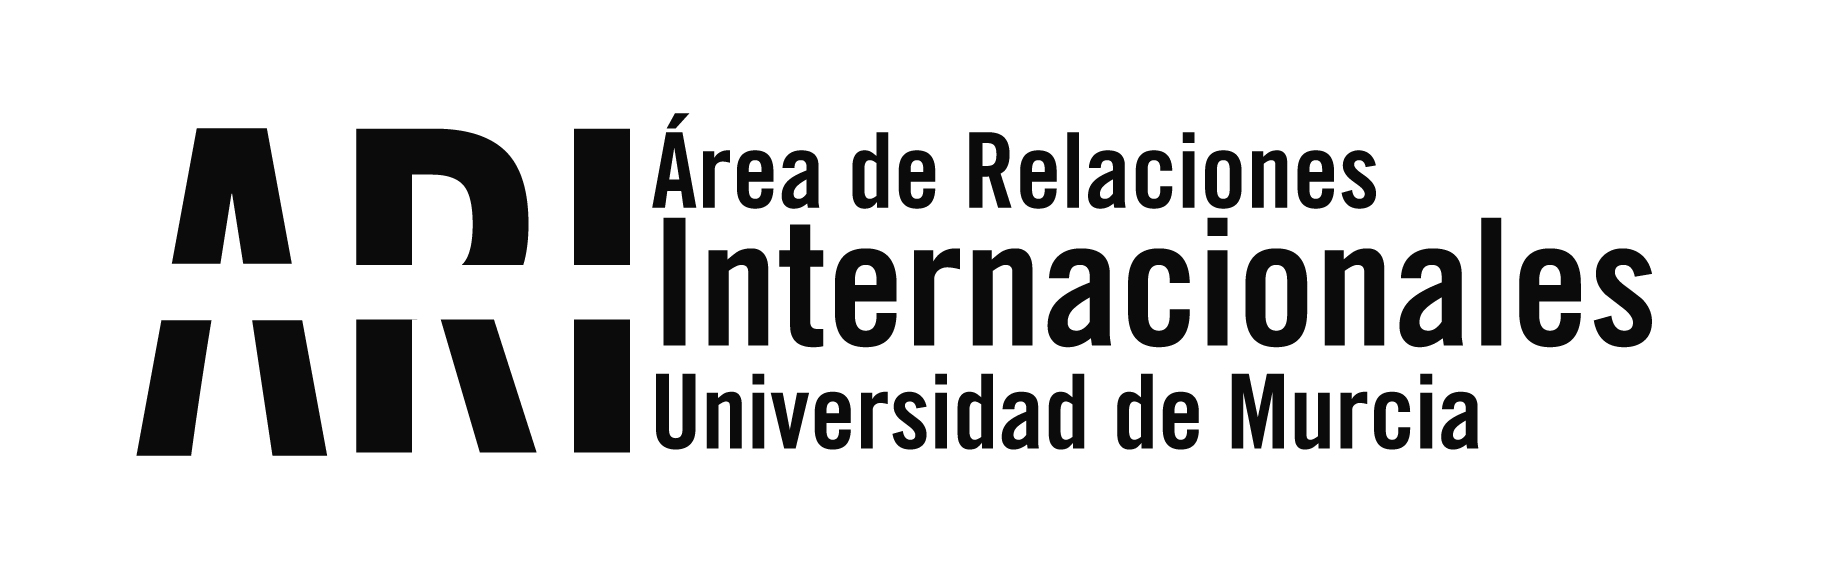 Certificación de idiomas en la Universidad de Murcia - Certificación de idiomas en la Universidad de Murcia - Área de Relaciones Internacionales